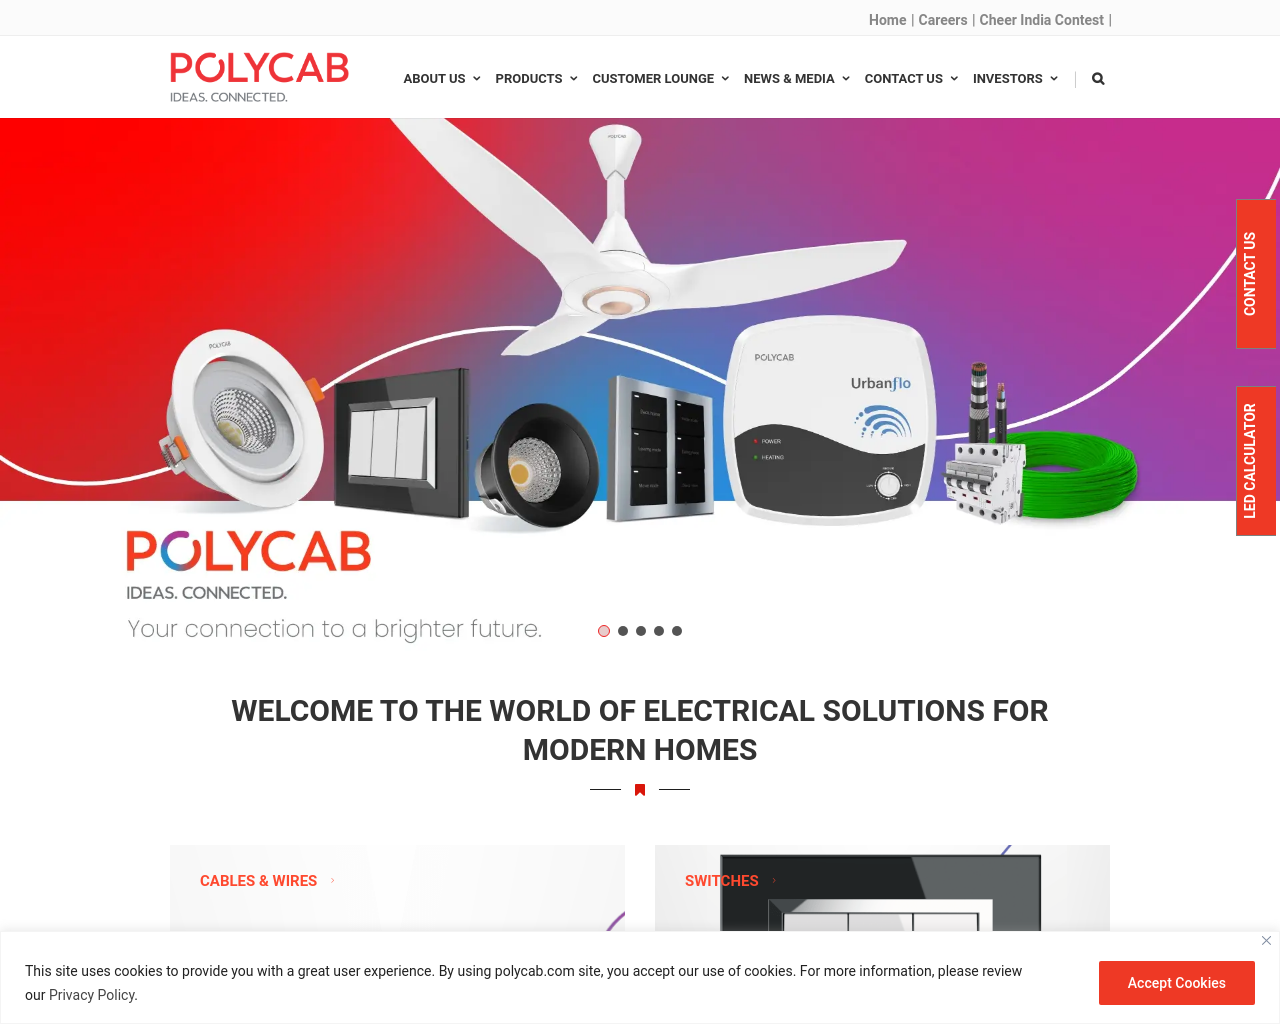 polycab.com